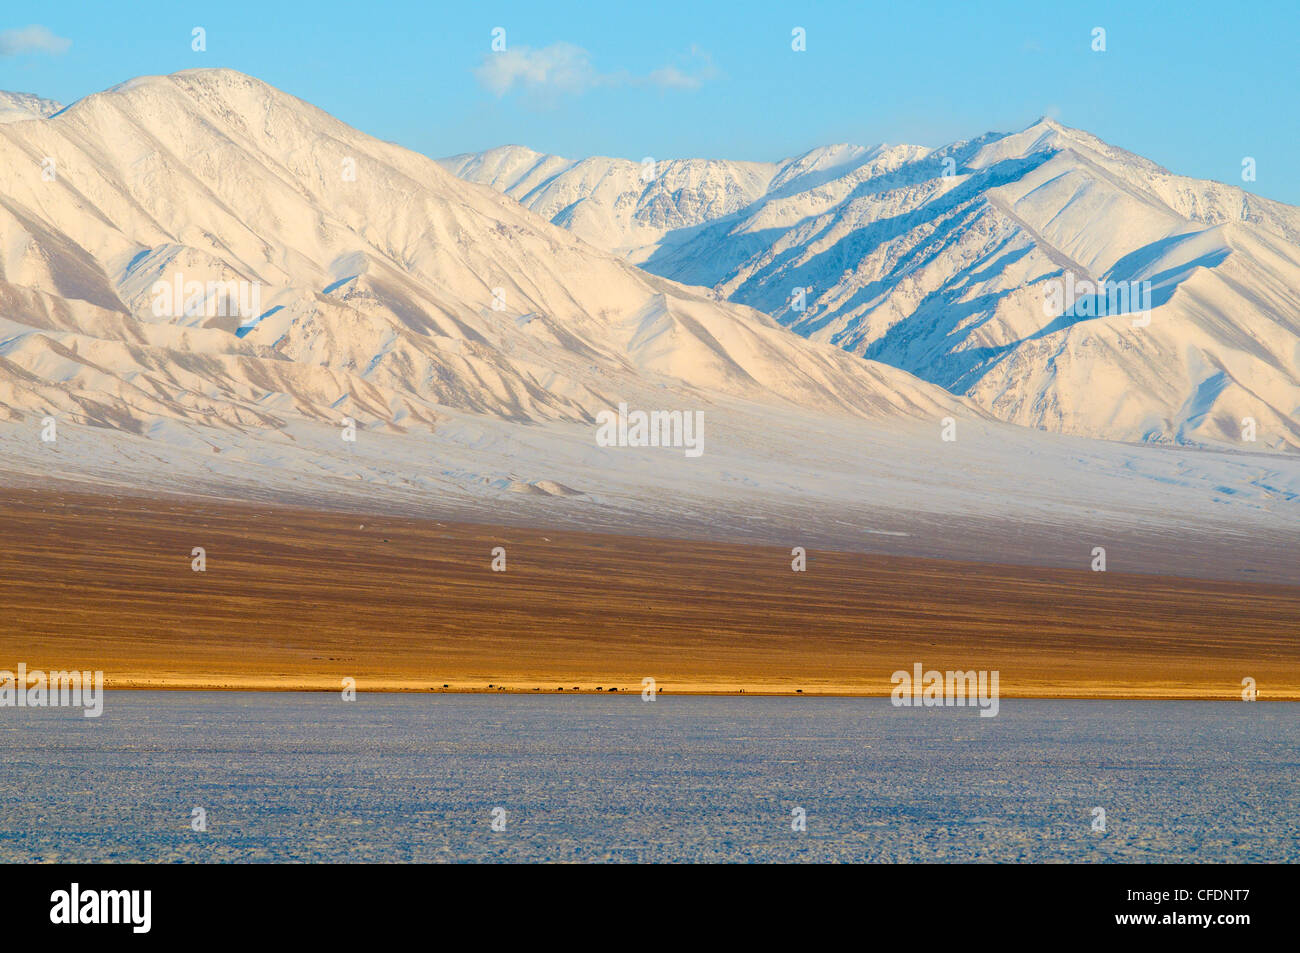 Paysage d'hiver dans la Biosphère avec des montagnes enneigées, le lac Khar Us Nuur, province de Khovd, la Mongolie, l'Asie centrale Banque D'Images